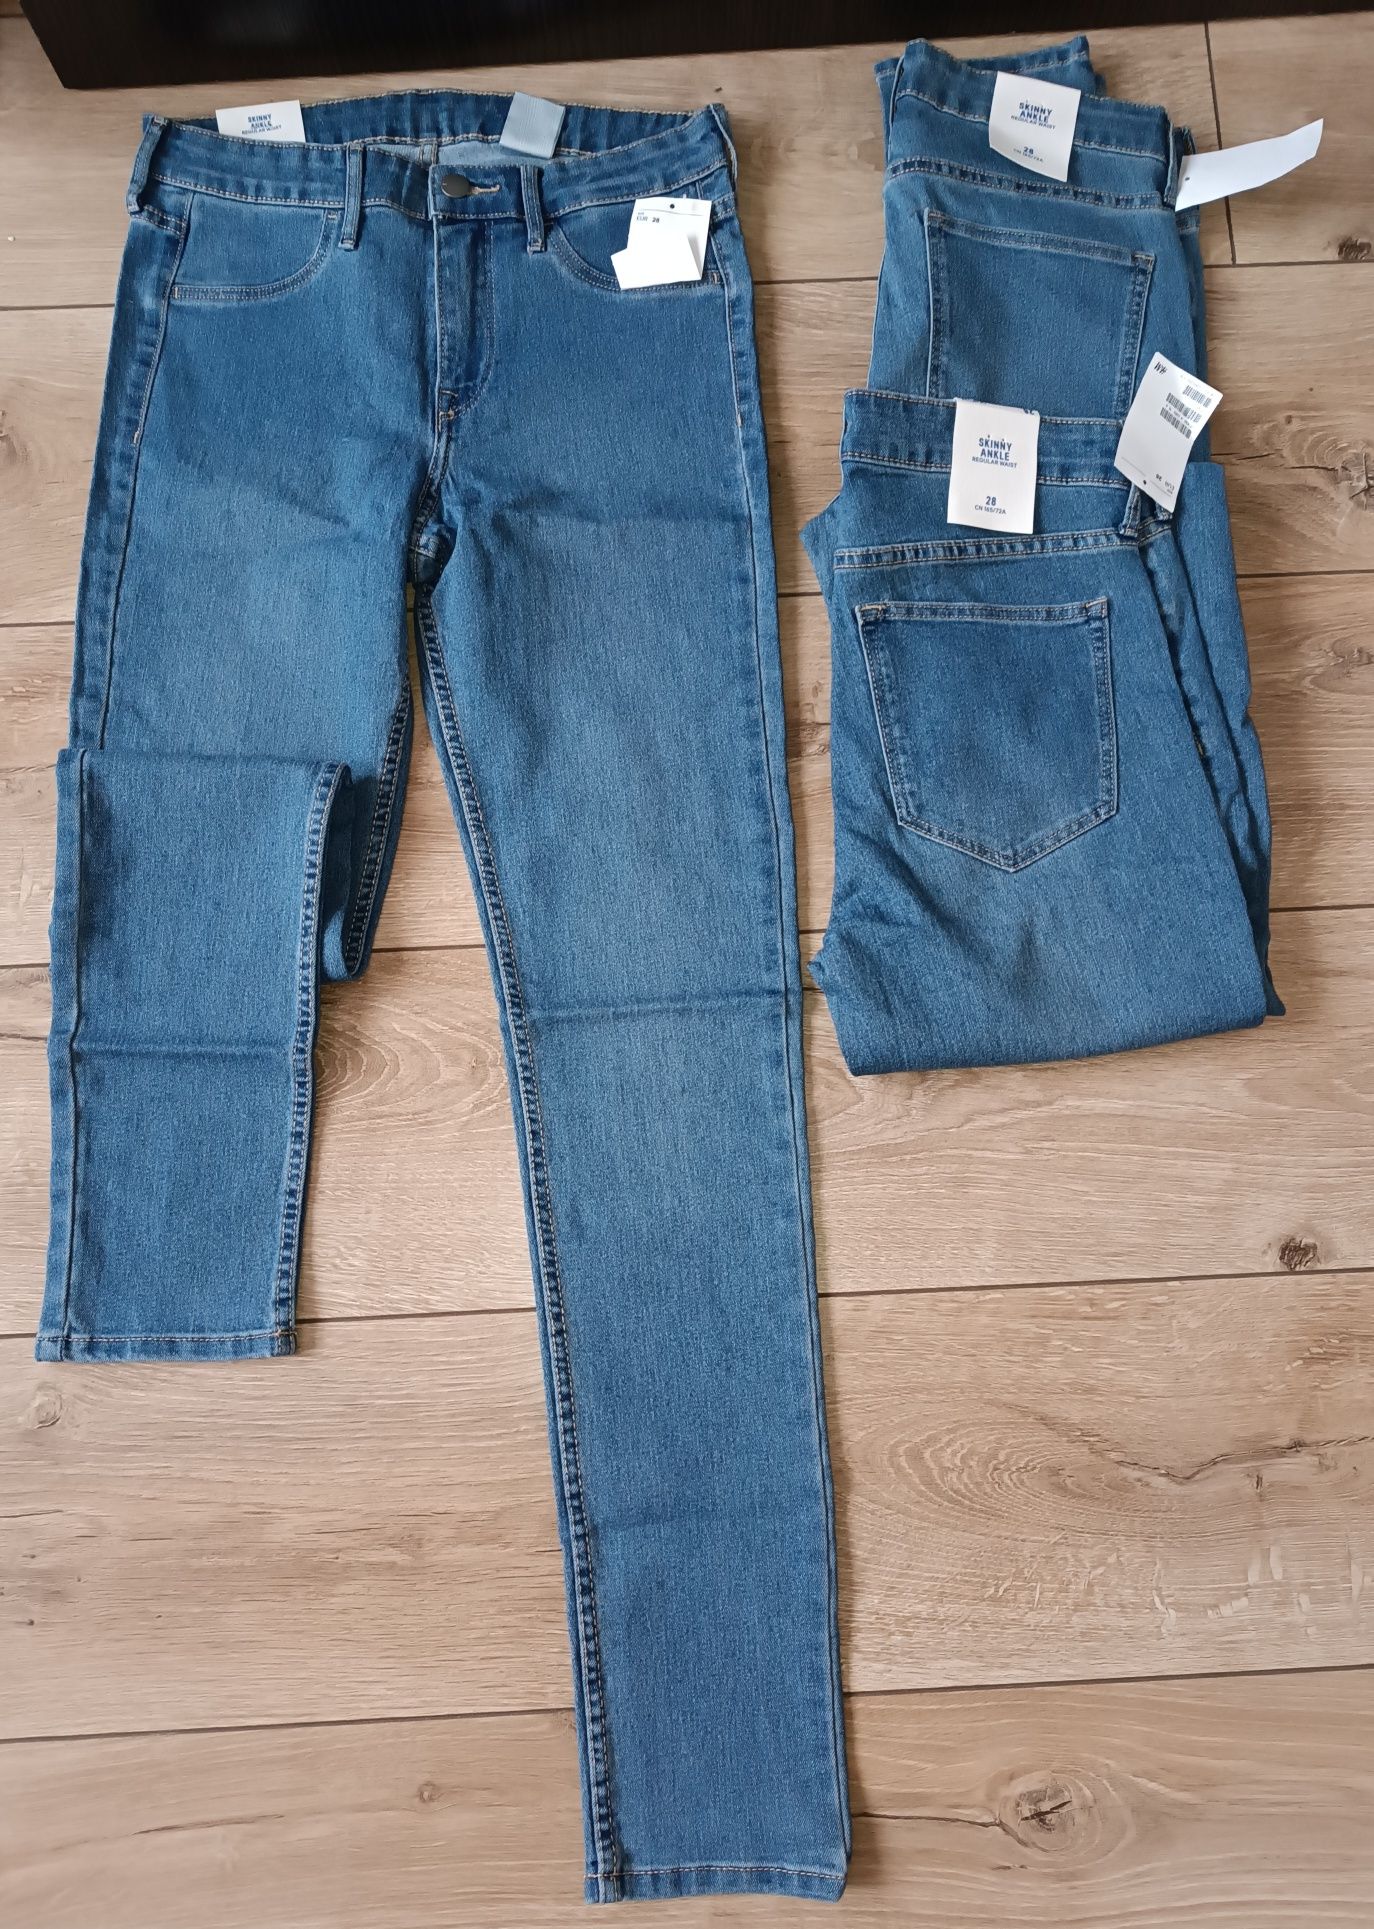 h&m якісні джинси/скіни для дівчинки  р.28 Бангладеш 165 зріст